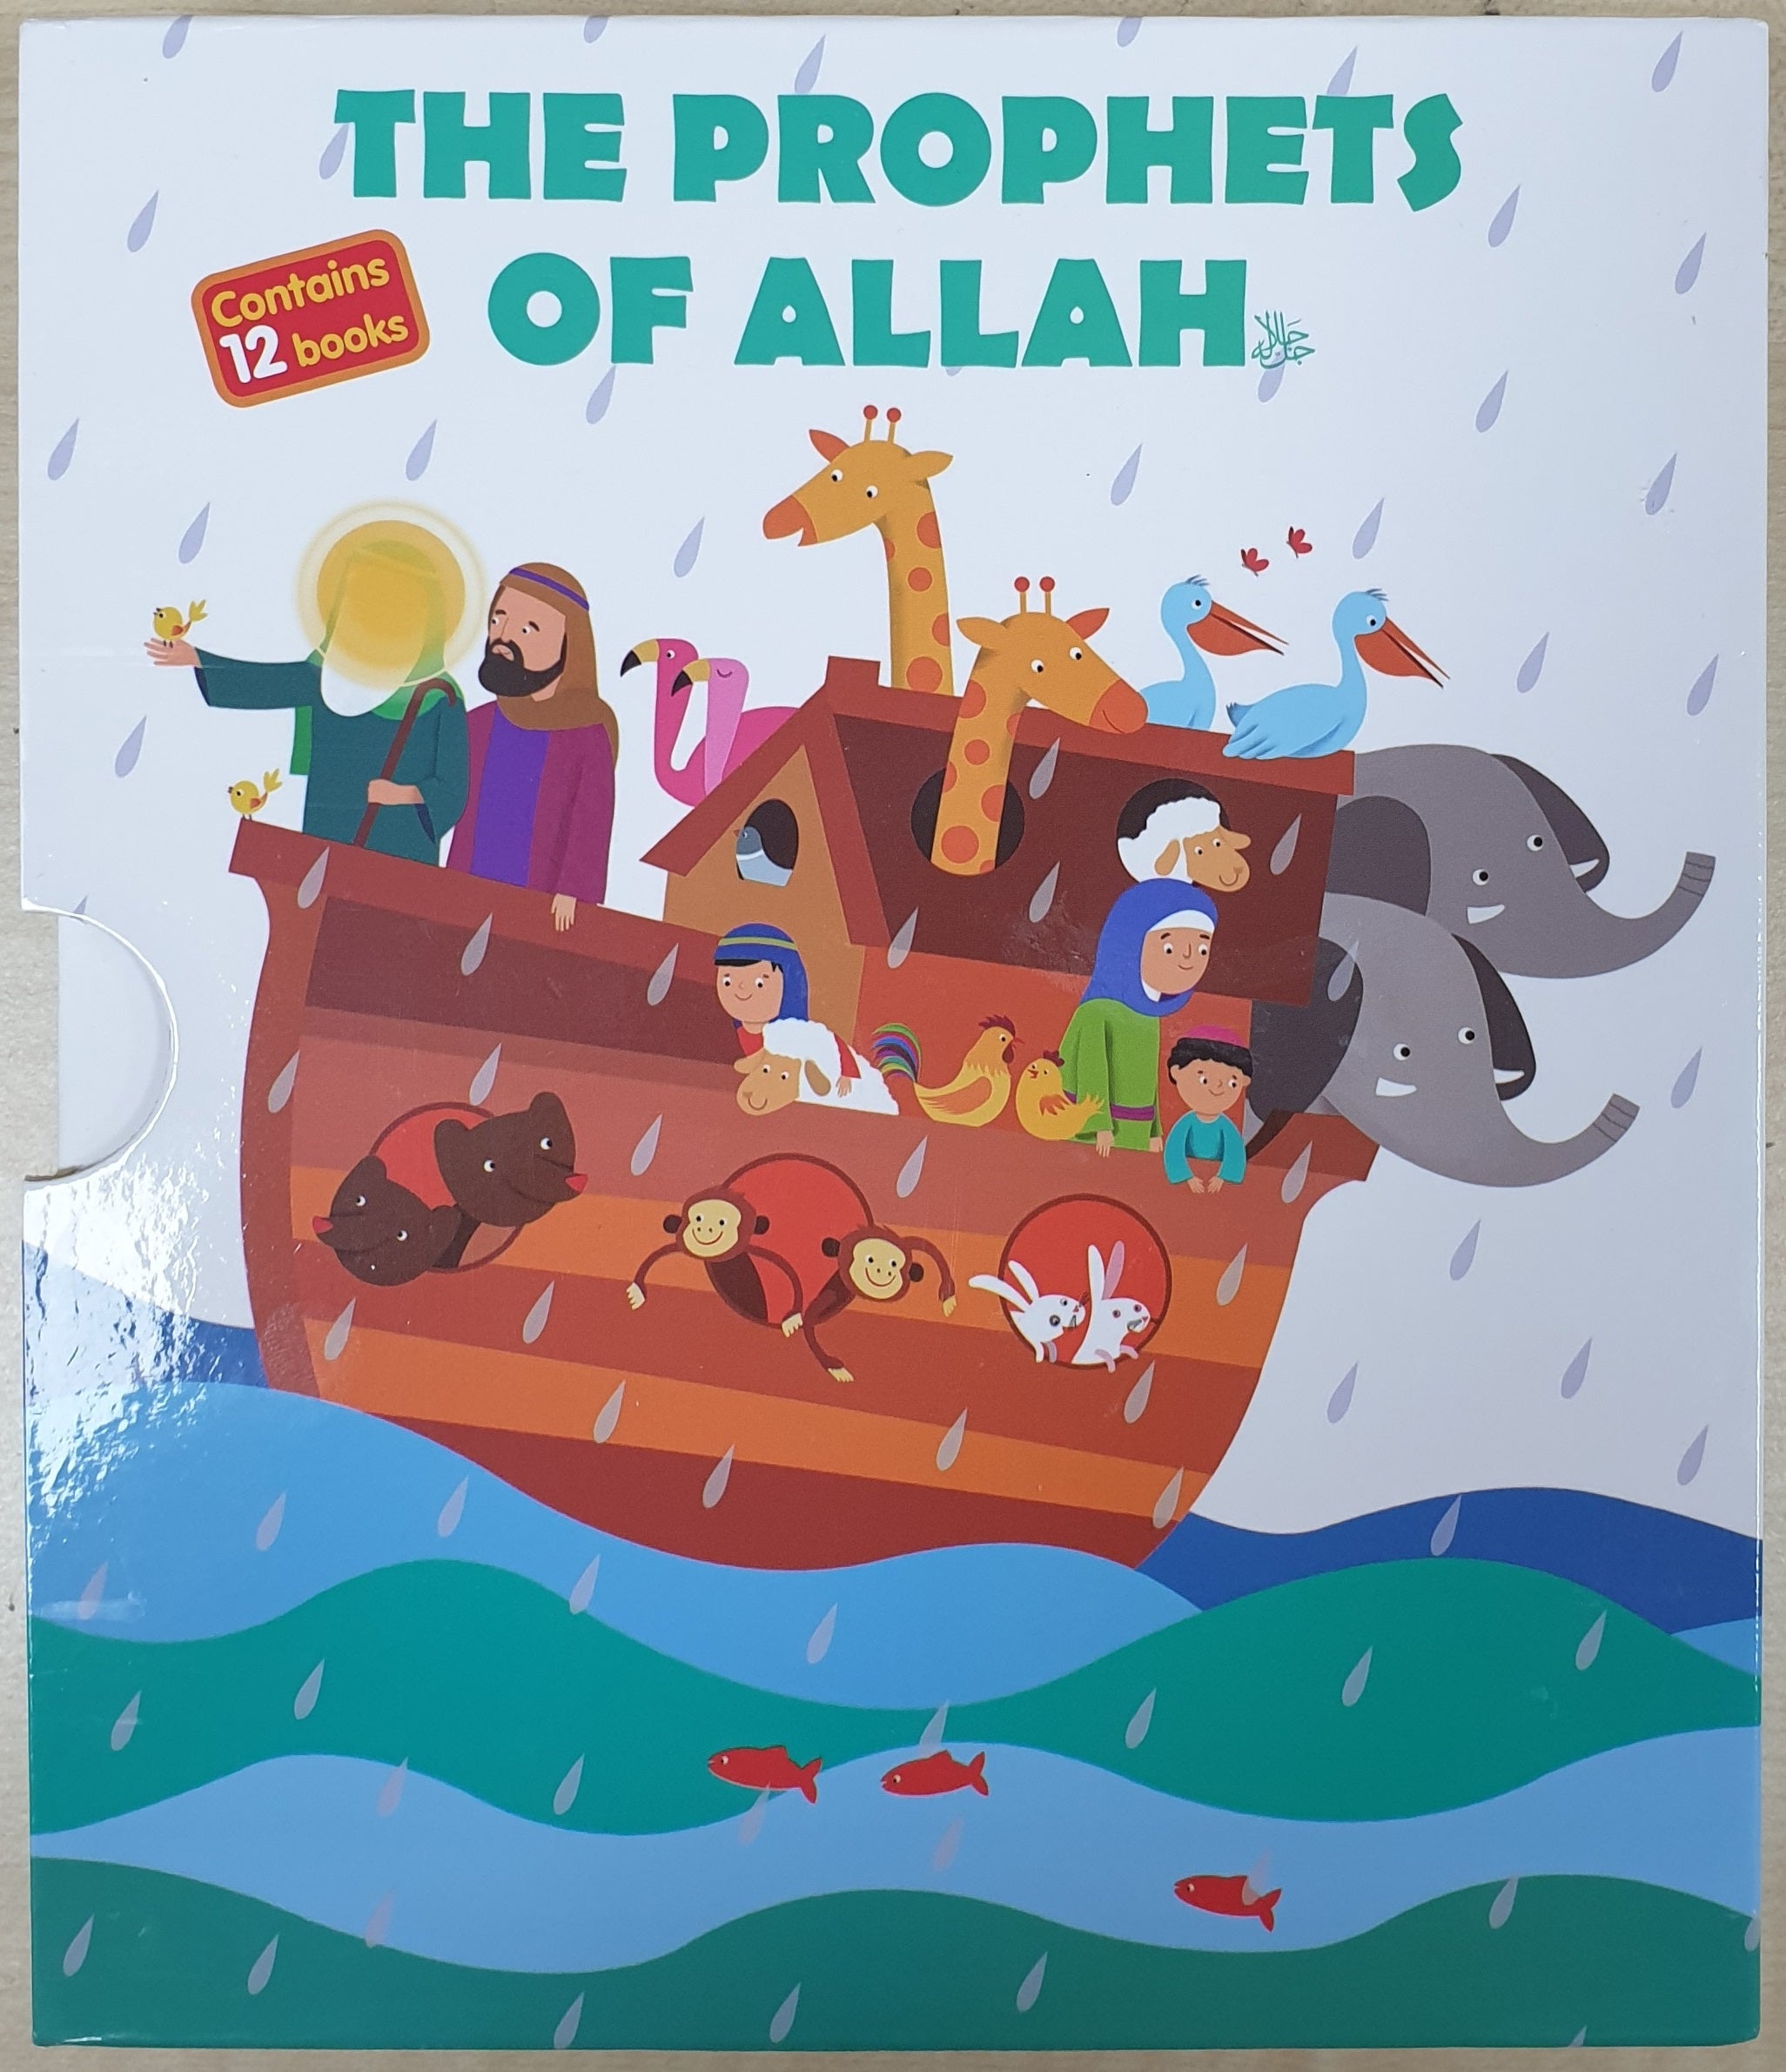 The Prophets of Allah - Bahrooz Rezaei Kahreez (Author), Nilofar Borumand (Illustrator)